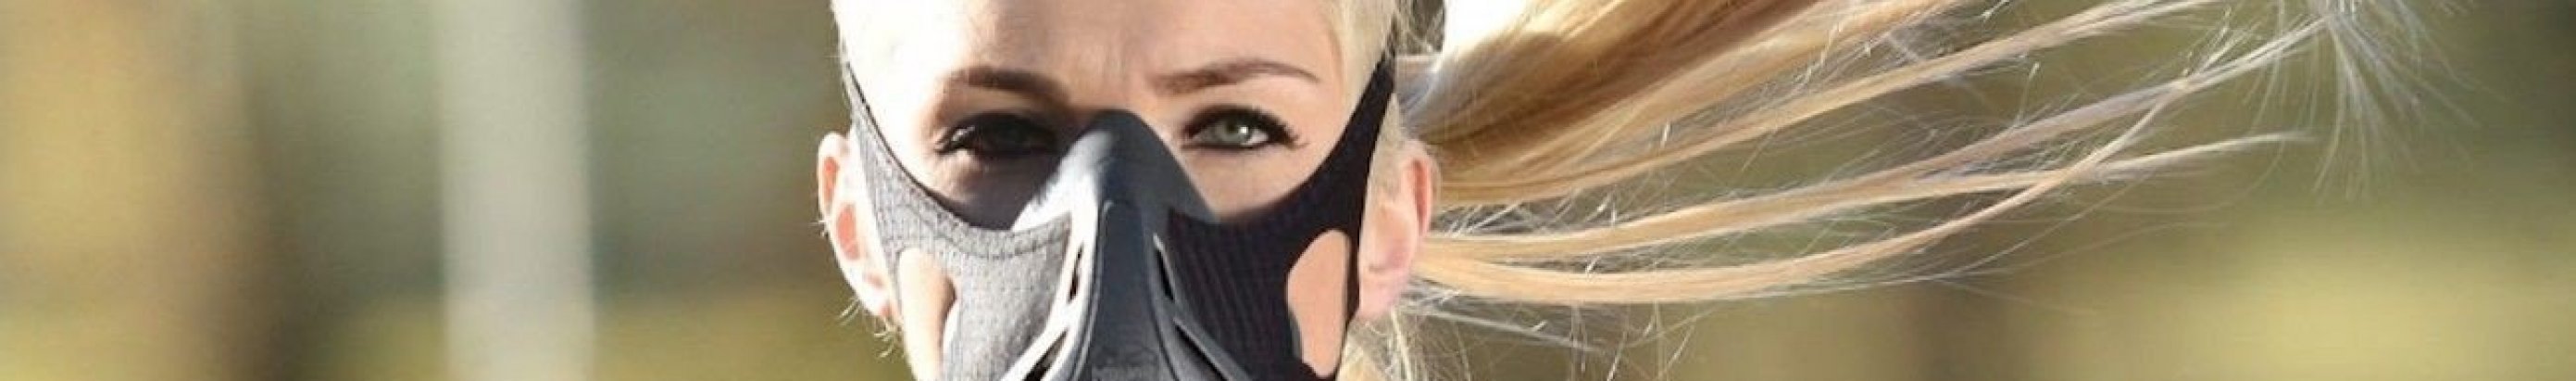 Гипоксическая маска при тренировках: стоит ли идти за модой